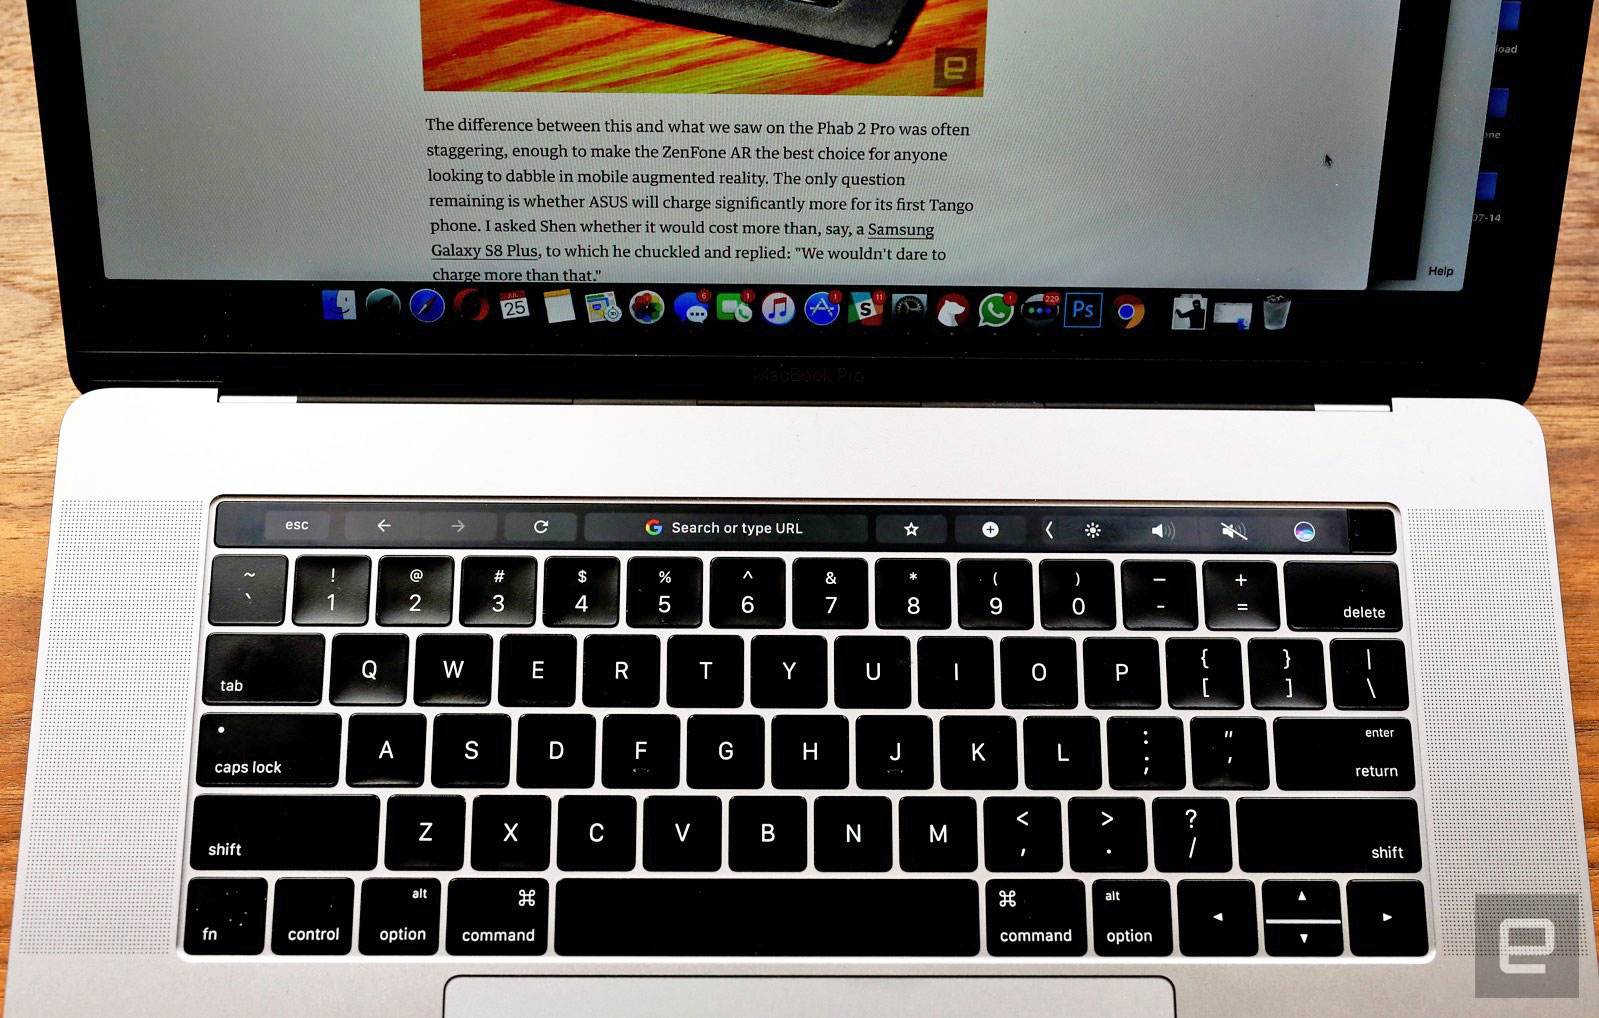 Chrome MacBook Pronuzun Dokunmatik Cubugu ile guzel bir sekilde oynuyor